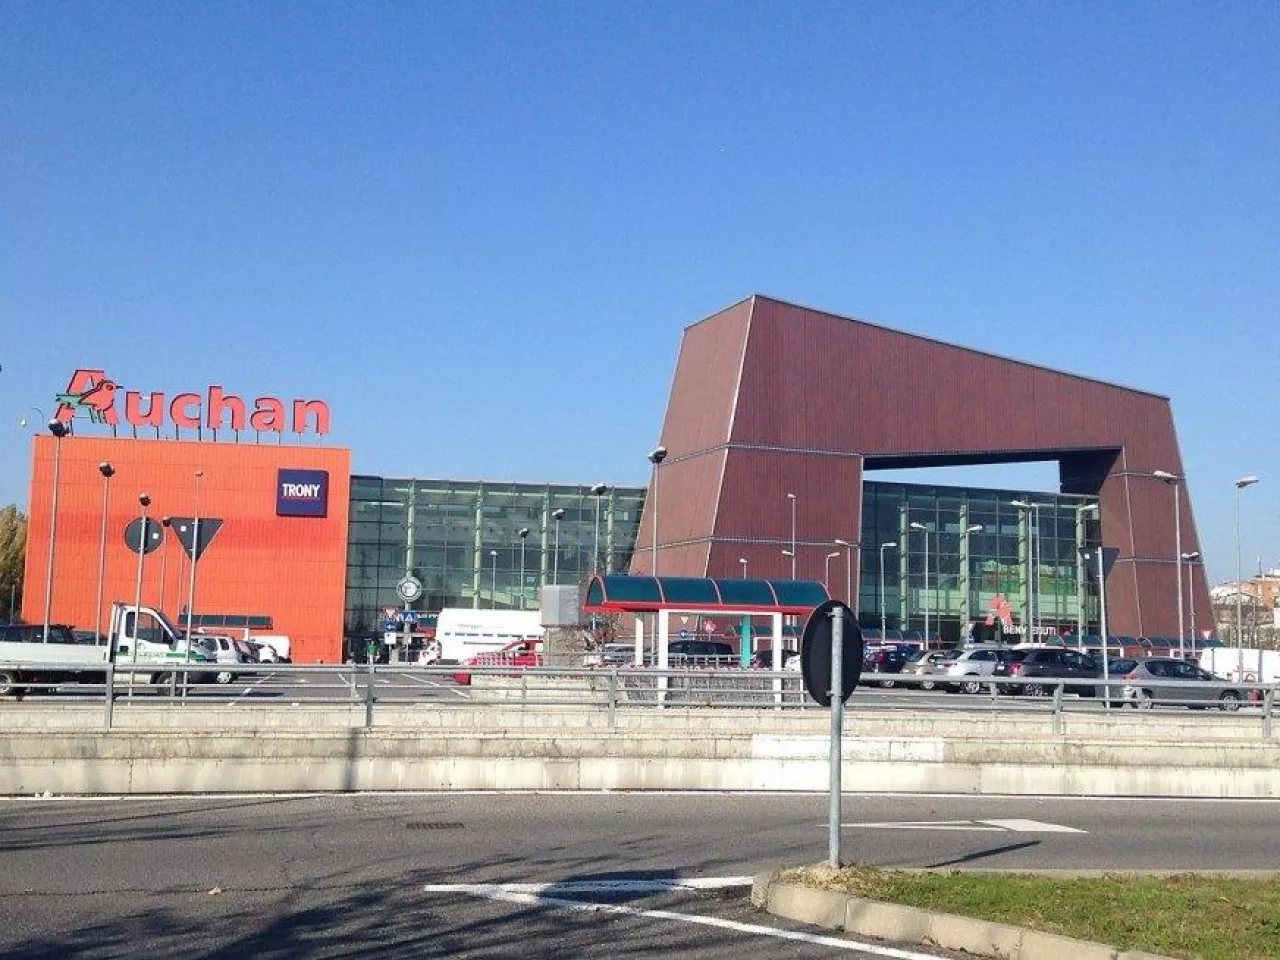 Auchan Cesano Boscone (Wikipedia, Andrea S. [Public Domain])